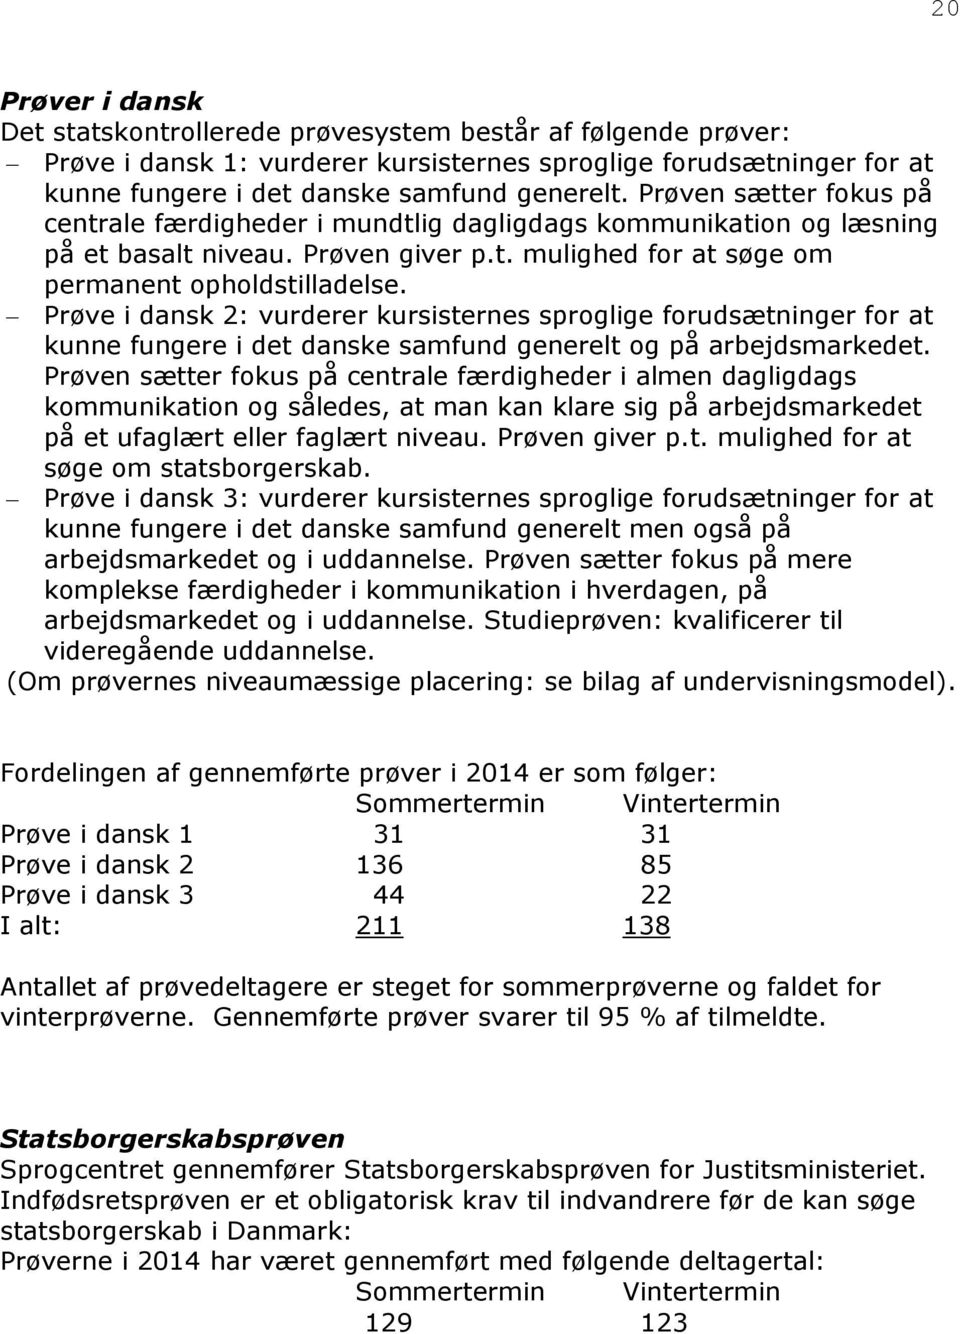 Prøve i dansk 2: vurderer kursisternes sproglige forudsætninger for at kunne fungere i det danske samfund generelt og på arbejdsmarkedet.